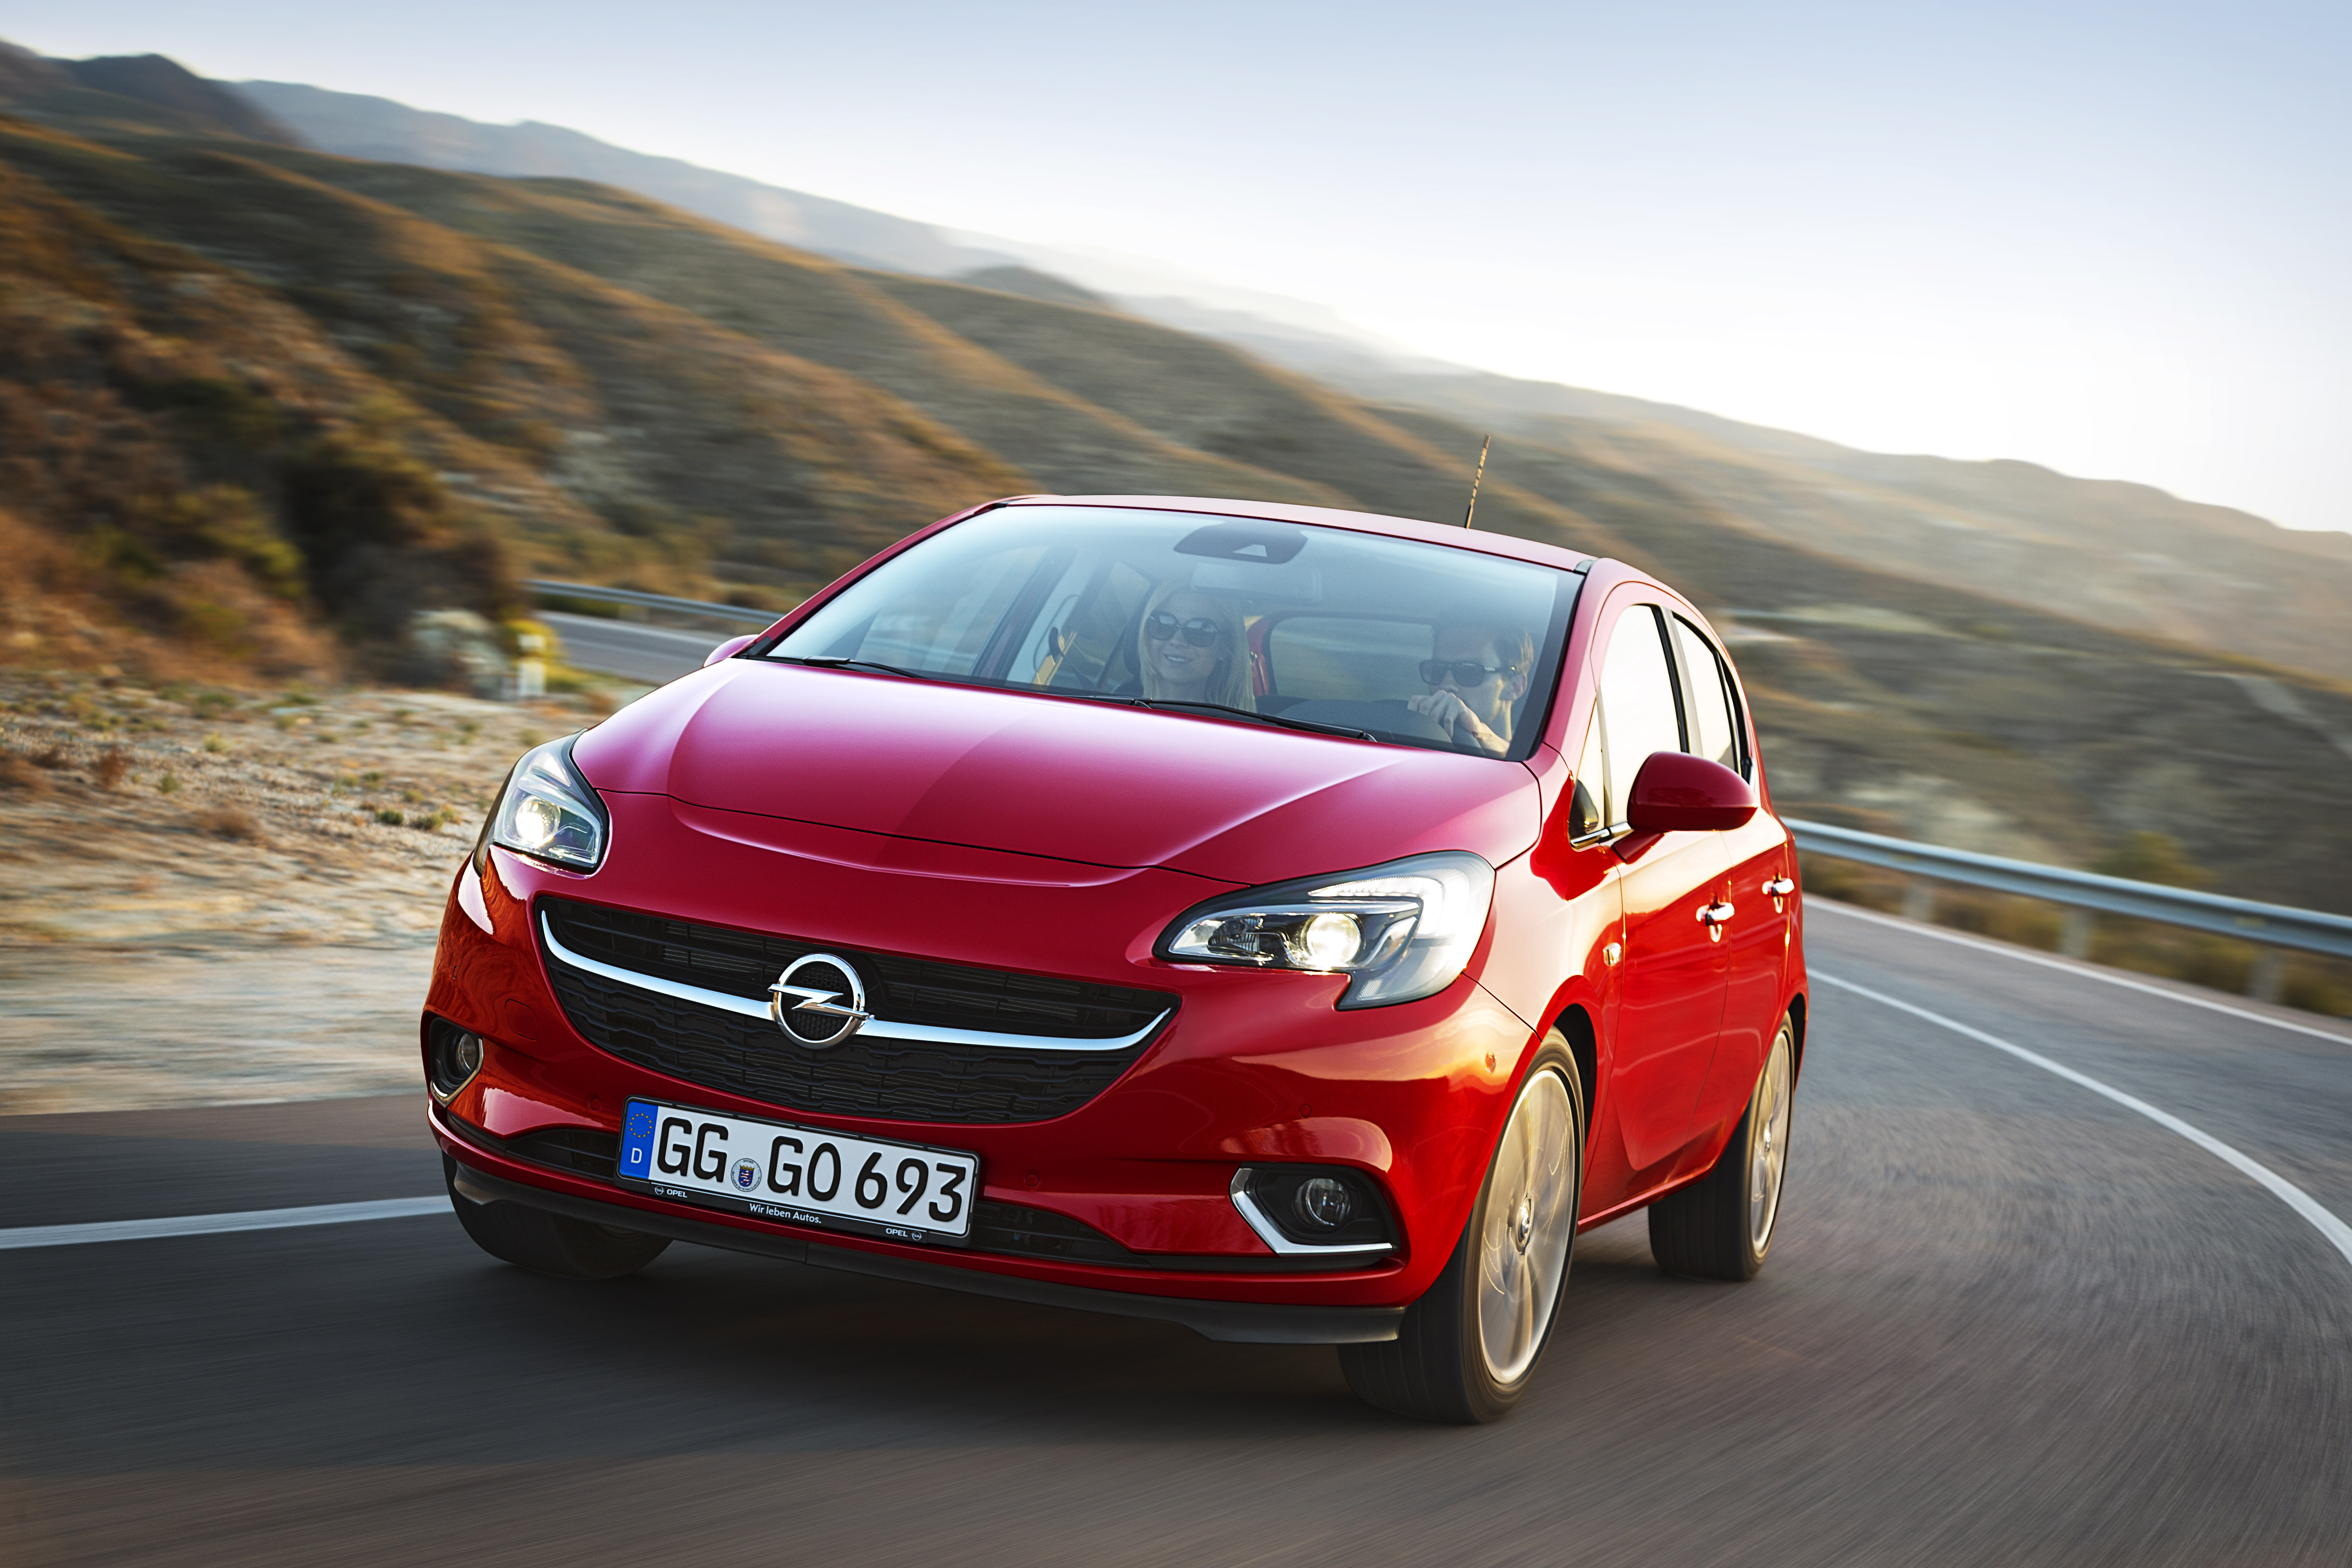 2015 Opel Corsa 1.3 CDTI ecoFLEX Turbo Diesel Drinks Only 3.1 Liters of